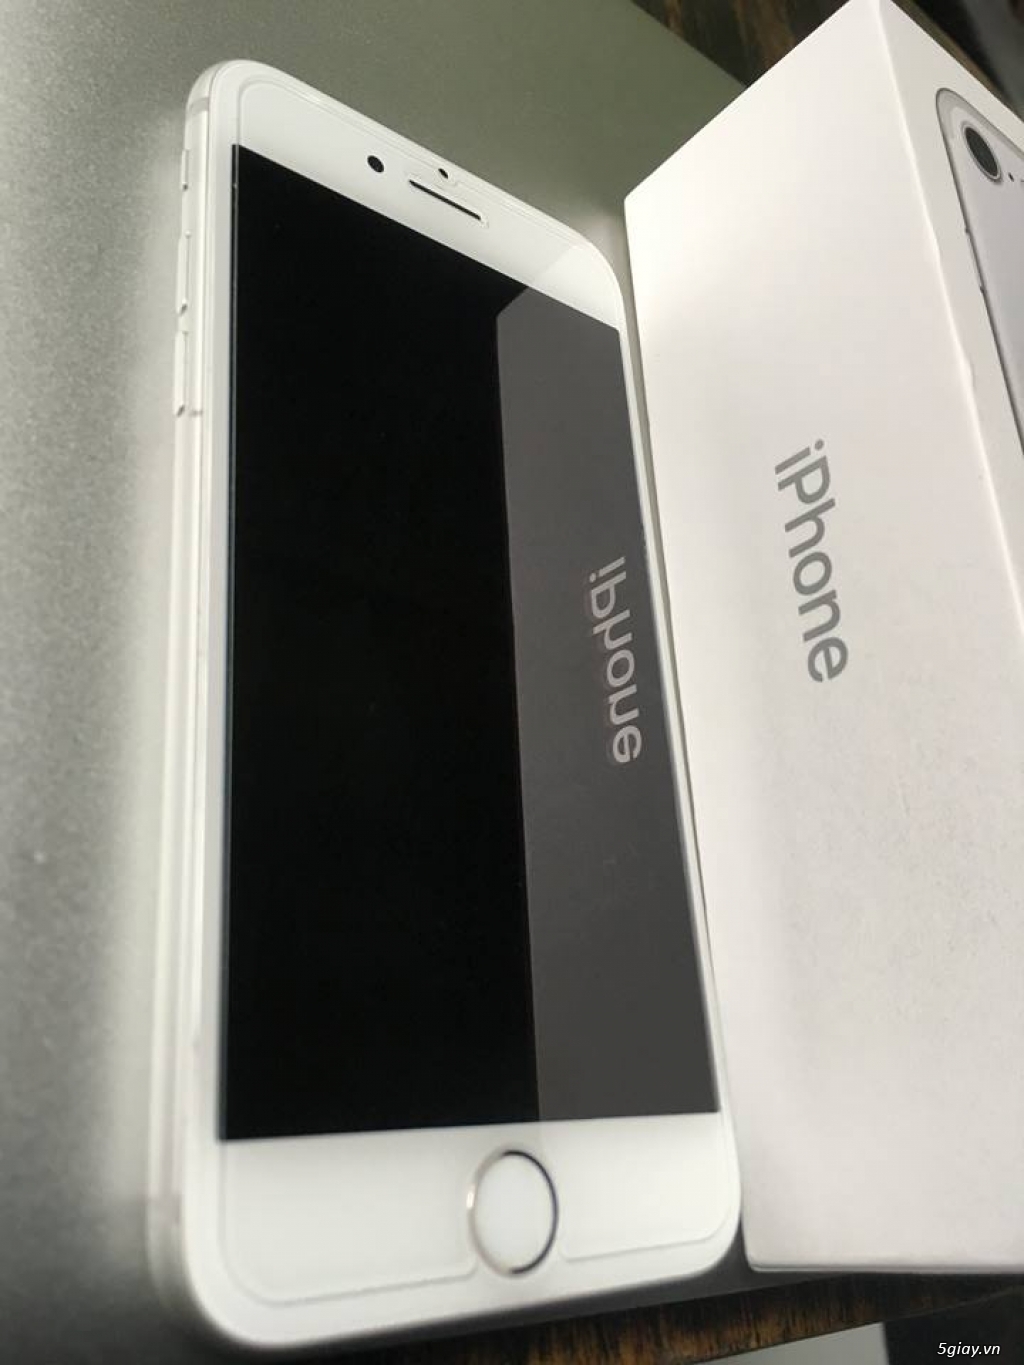 Iphone 7 256Gb màu Silver fullbox active rồi như mới - 2